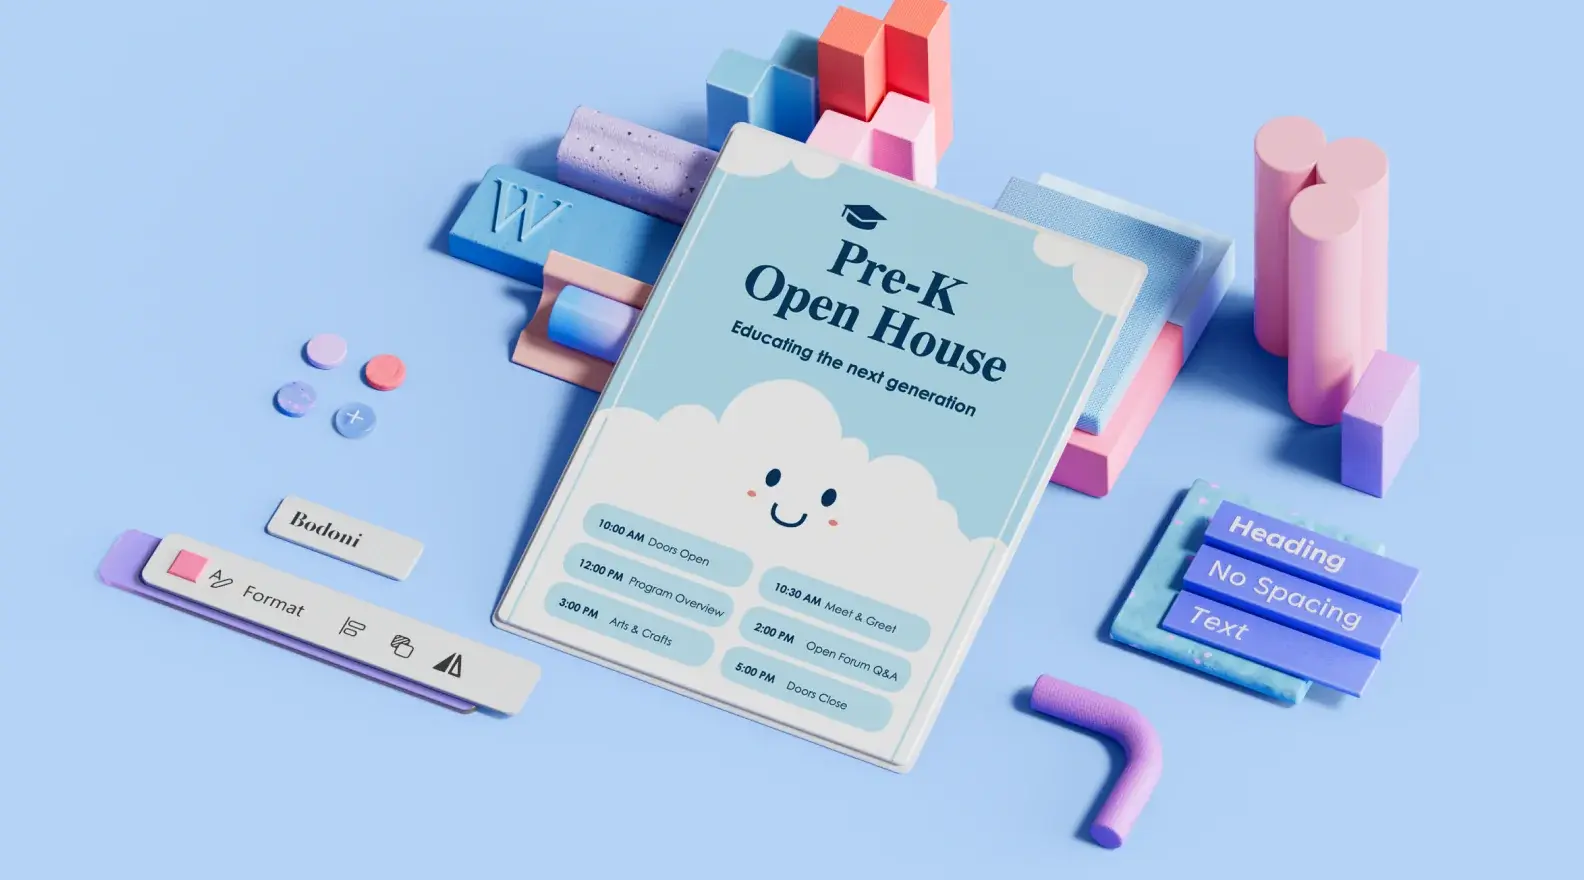 3B tasarım öğeleriyle çevrili anaokulu açık davet etkinliği poster şablonu